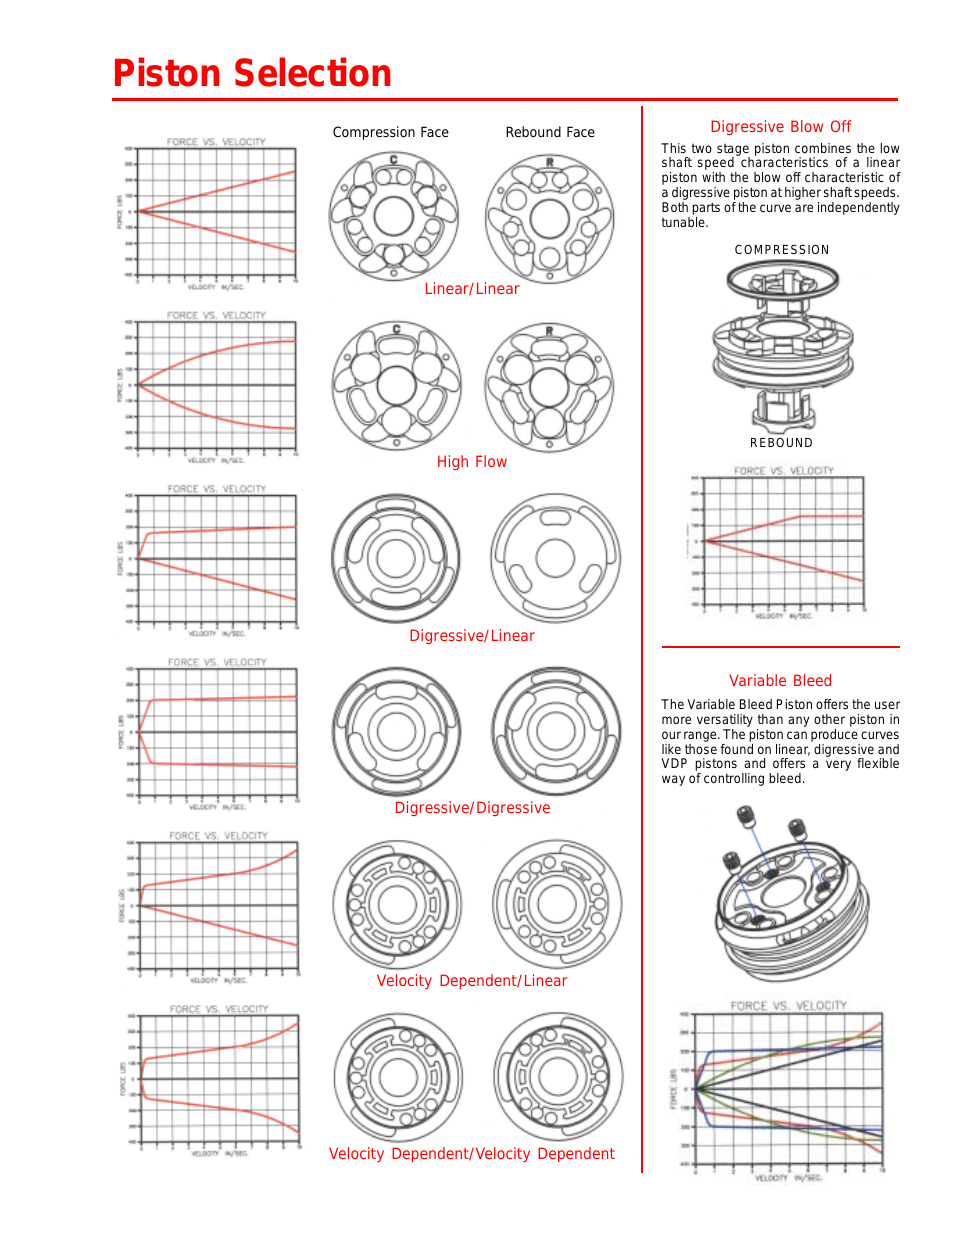 penske-racing-shocks-7300-series-page13.png